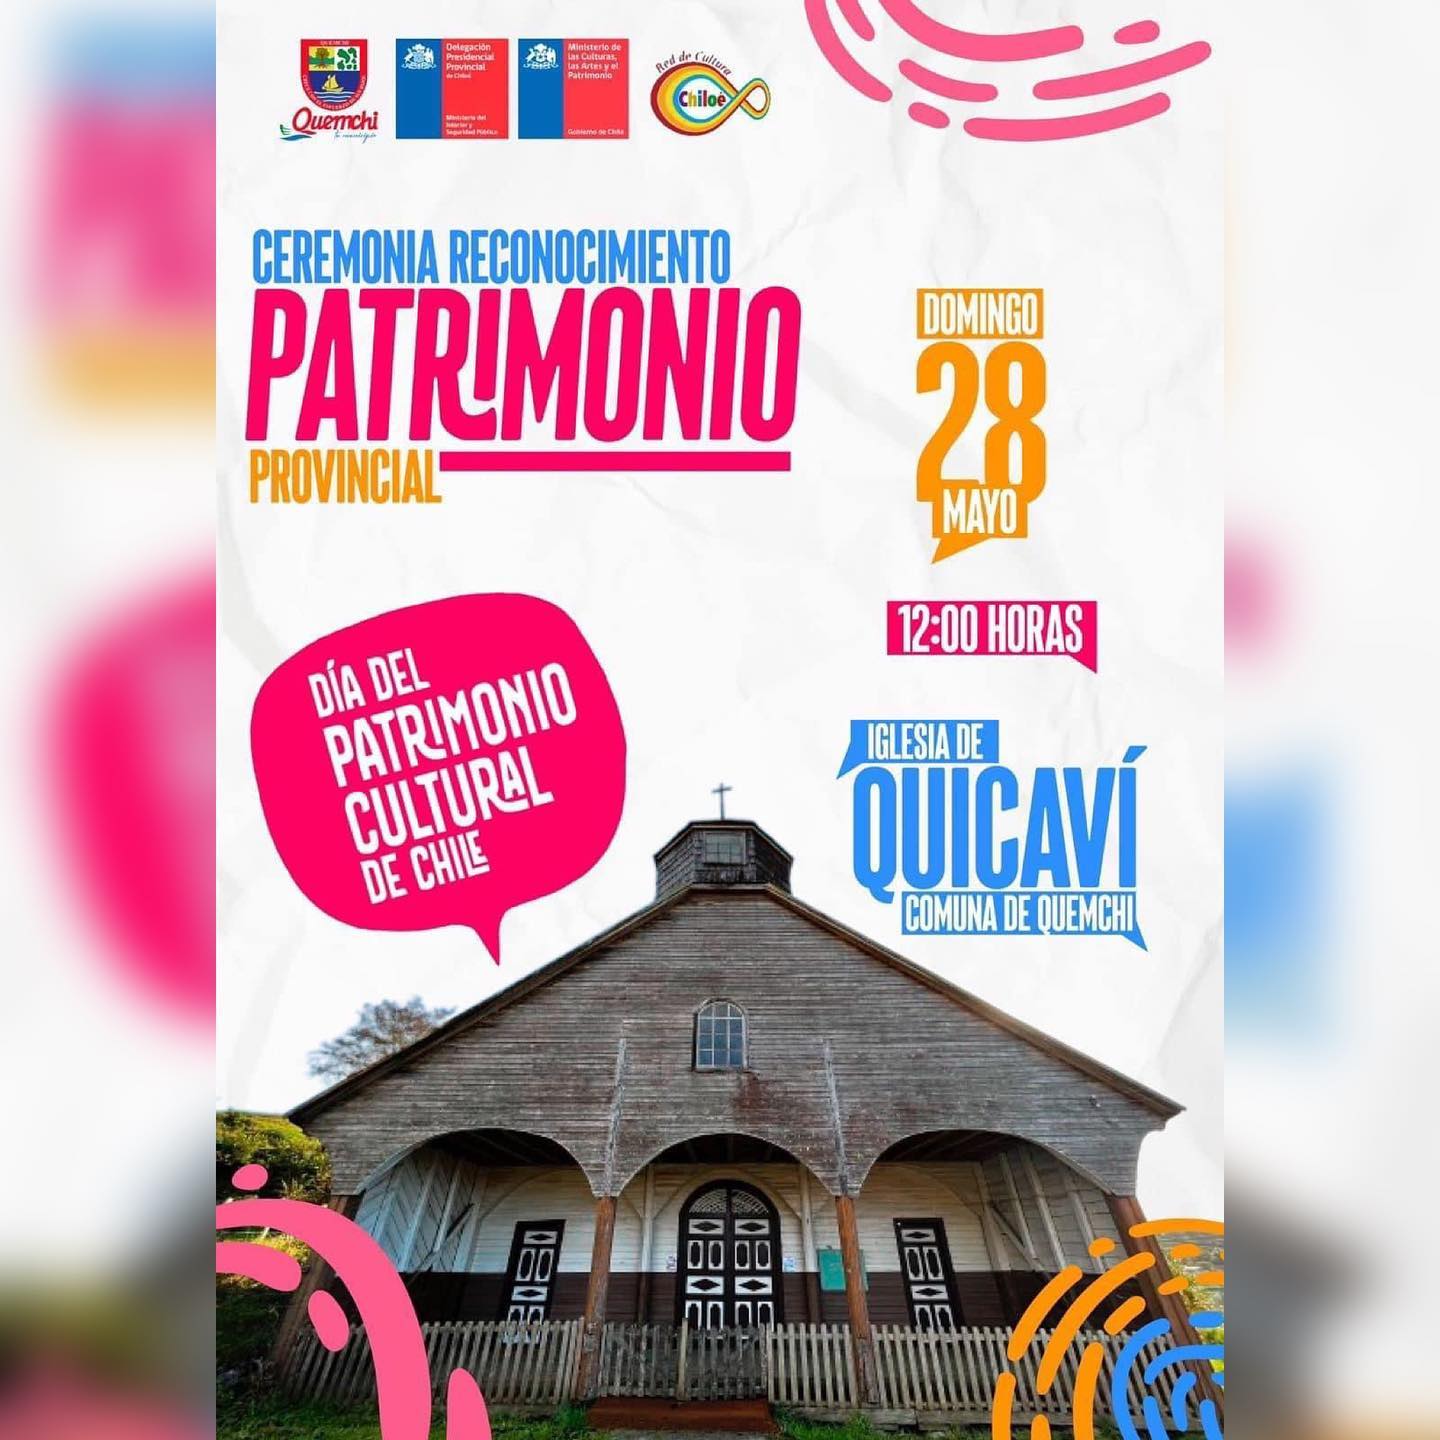 📣Recuerden la gran invitación para que nos acompañen en la Ceremonia Provincial del Día de los Patrimonios.

Domingo 28 de mayo a las 12:00 horas, en la #Iglesia de #Quicaví, comuna de #Quemchi.
@dppchiloe Red de Cultura #Chiloé #QuemchiTuMunicipio #diadelpatrimonio